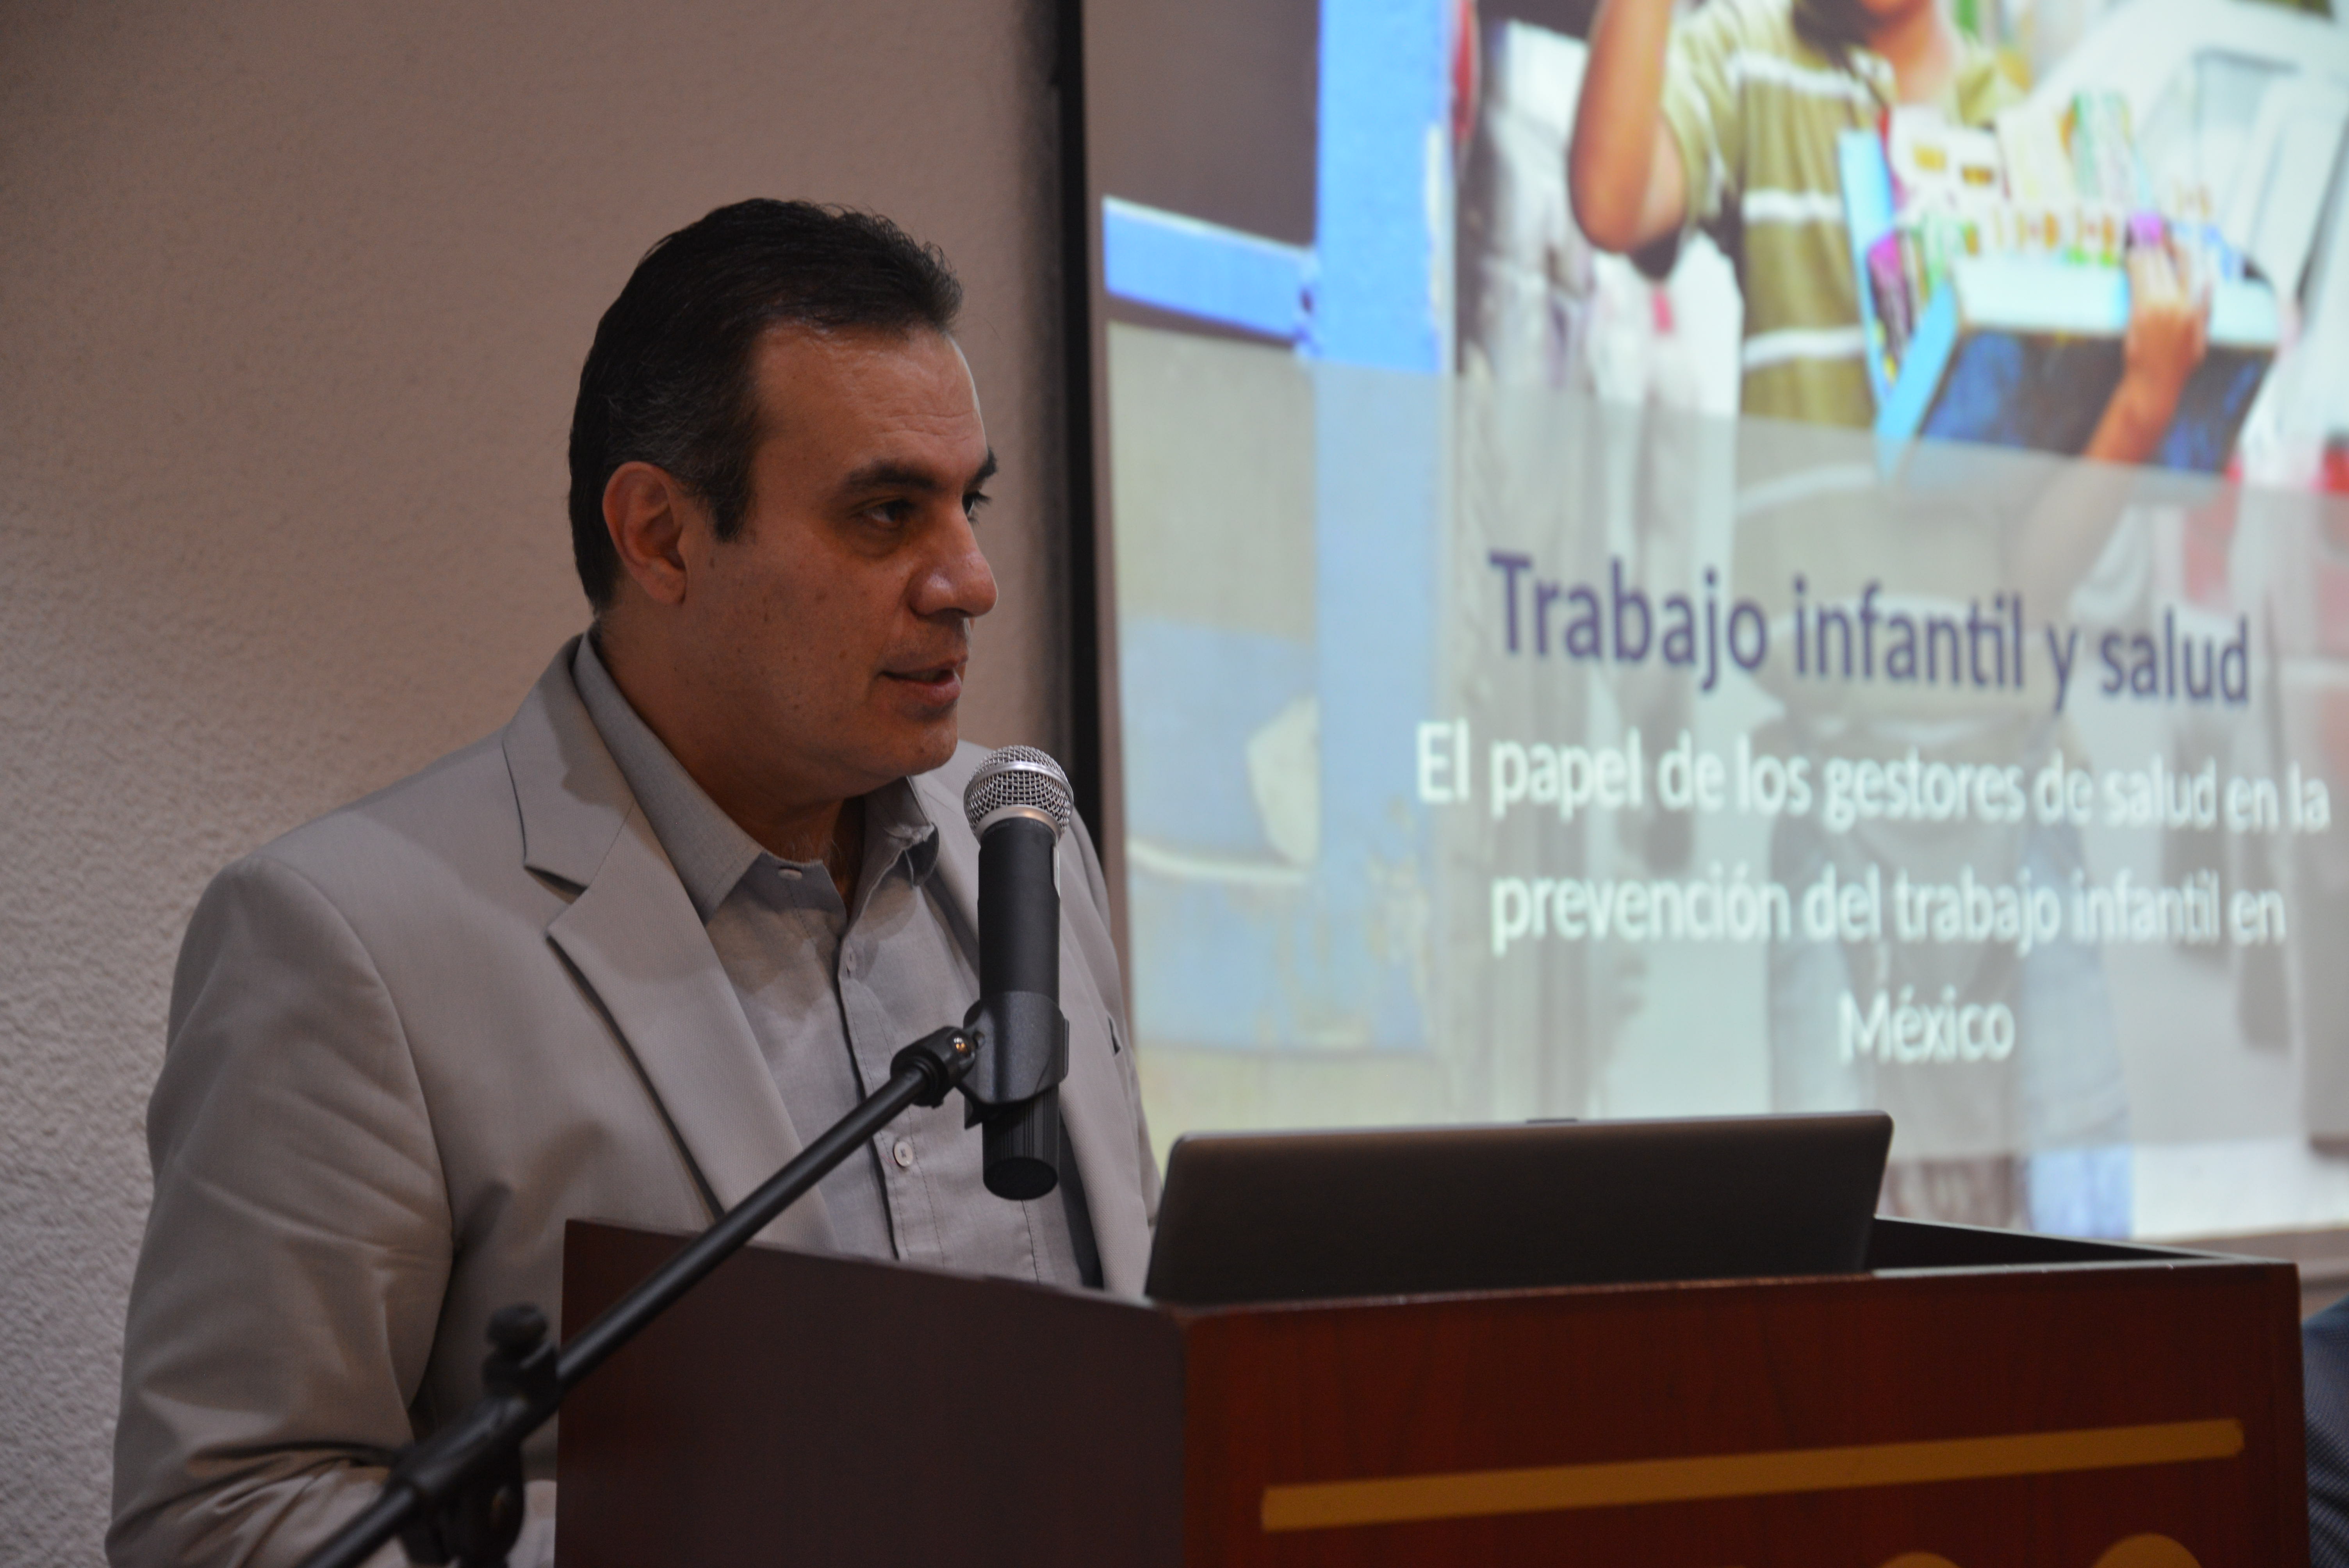 Dr. Igor Ramos Herrera inaugurando el evento